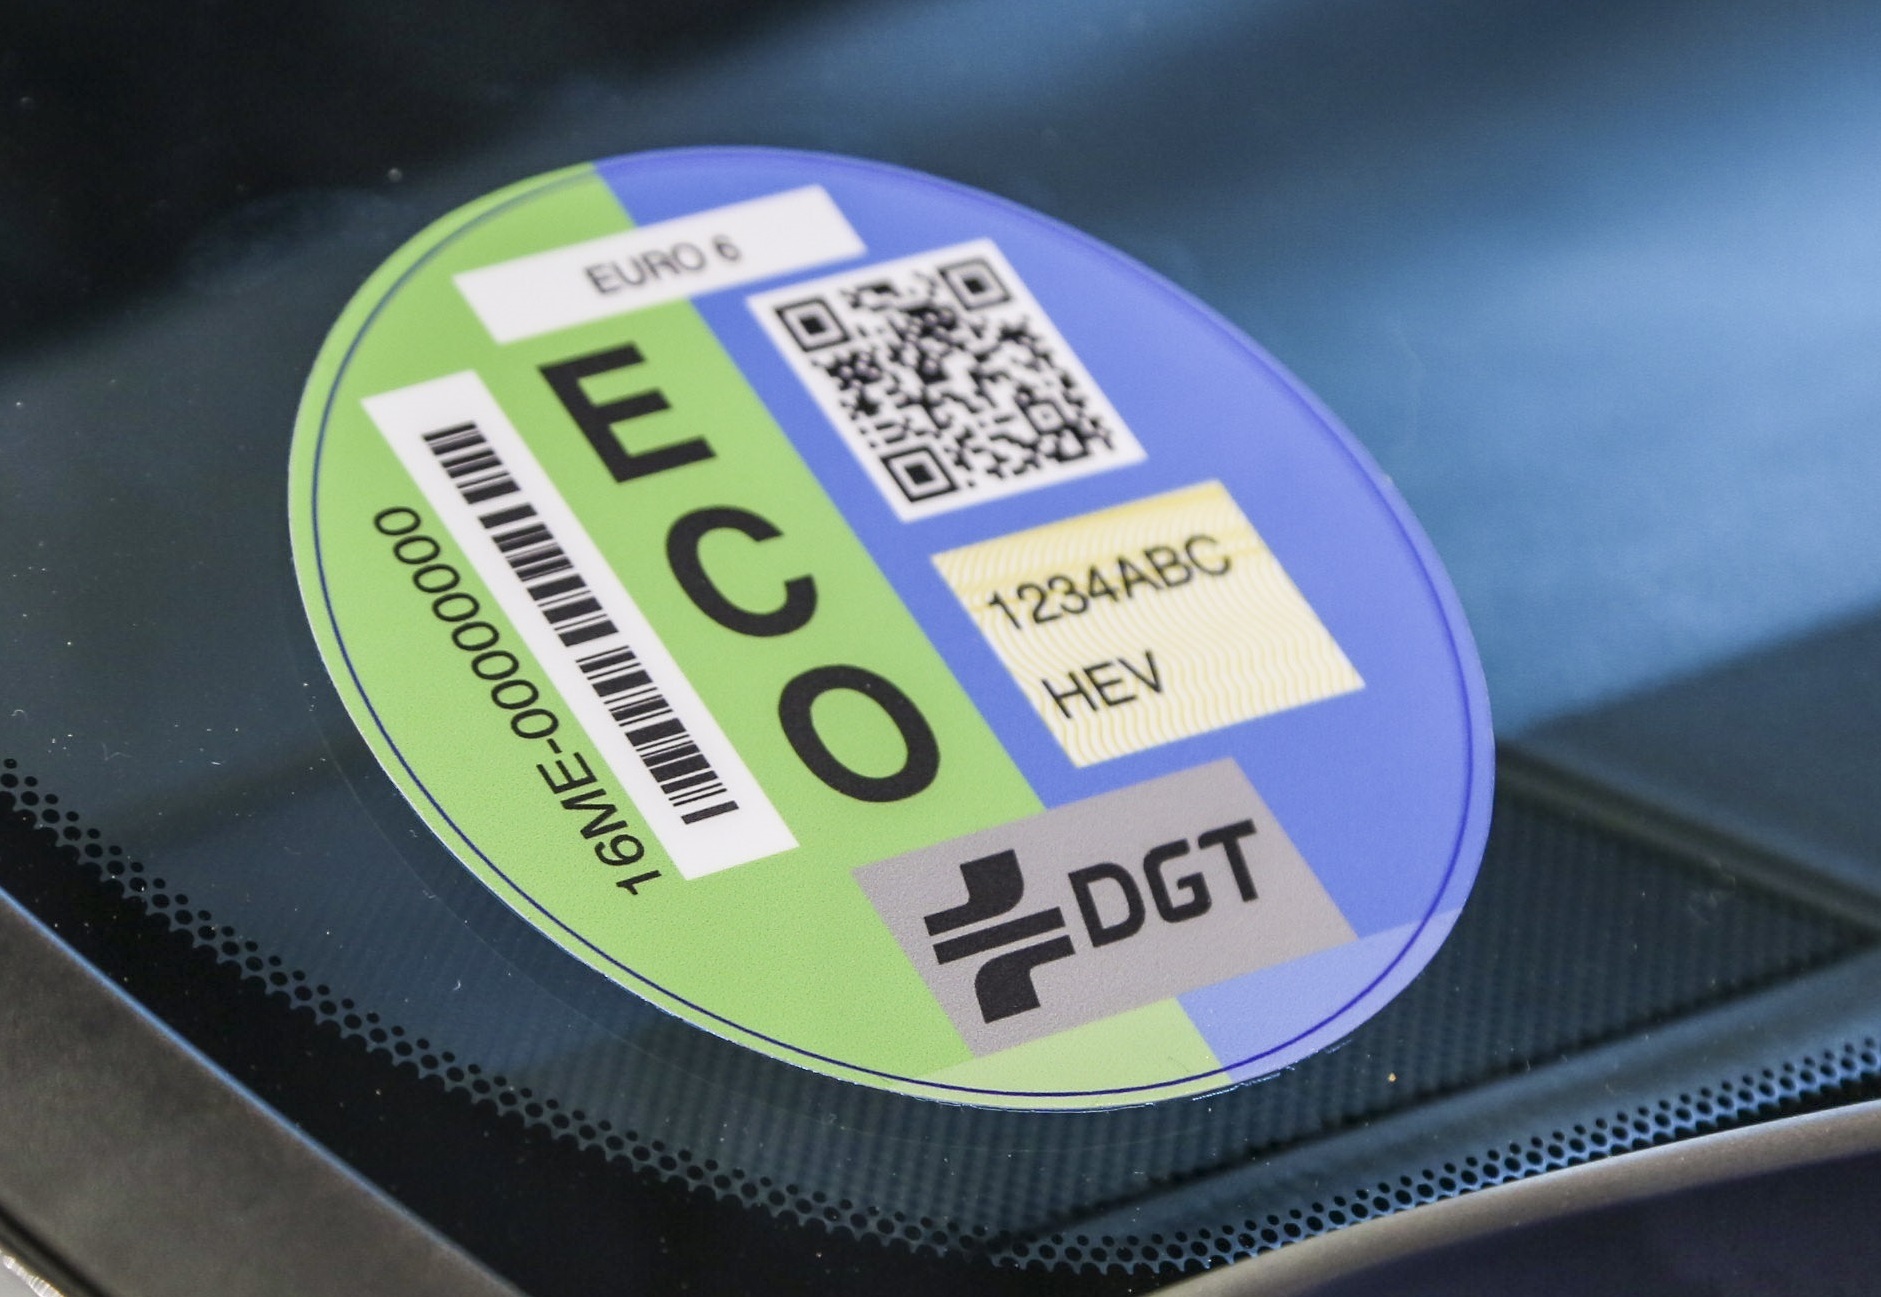 Es llevar en el parabrisas la pegatina de la y la etiqueta medioambiental de DGT? | Computer